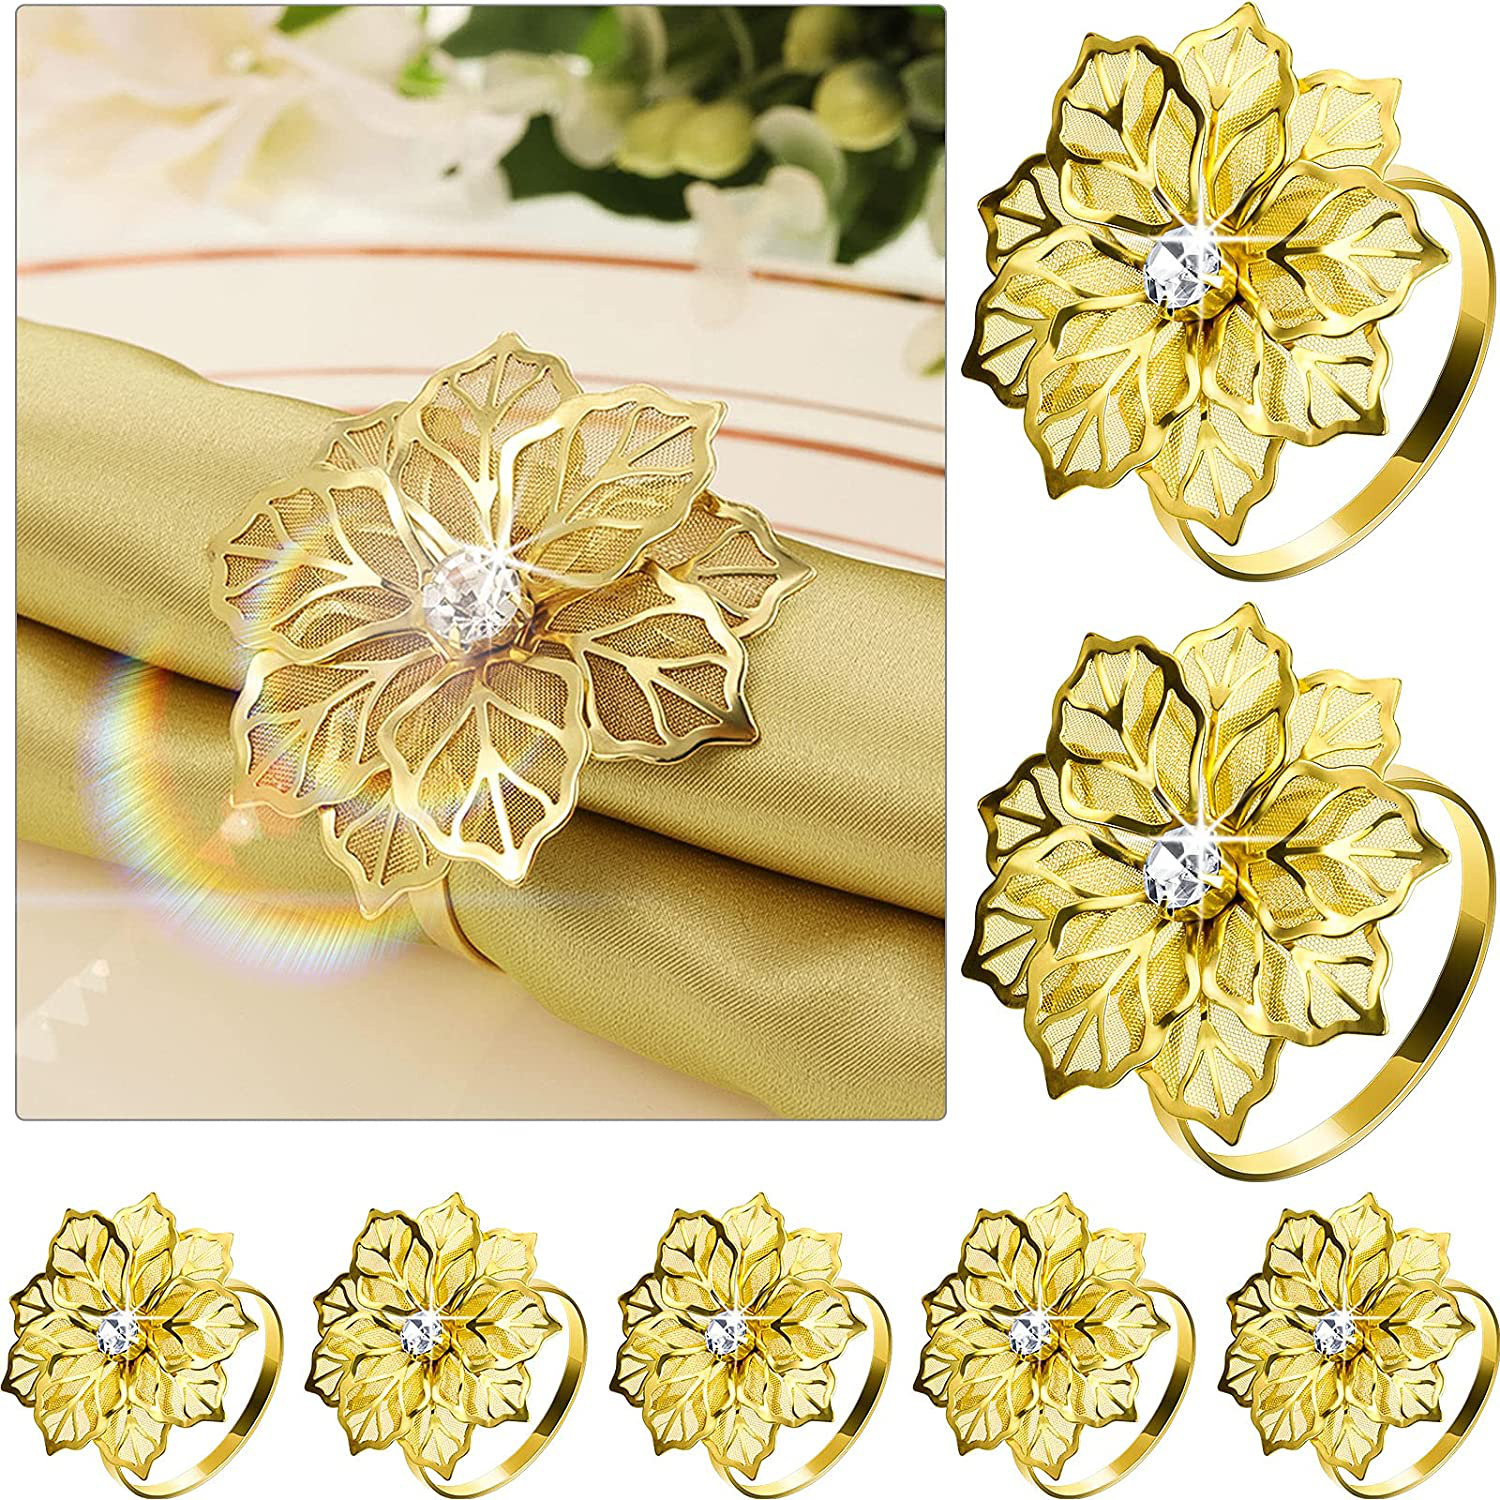 Elegant Luxury Flowers Napkin Ring Holder Alloy Dinner Party Wedding Table Decor 